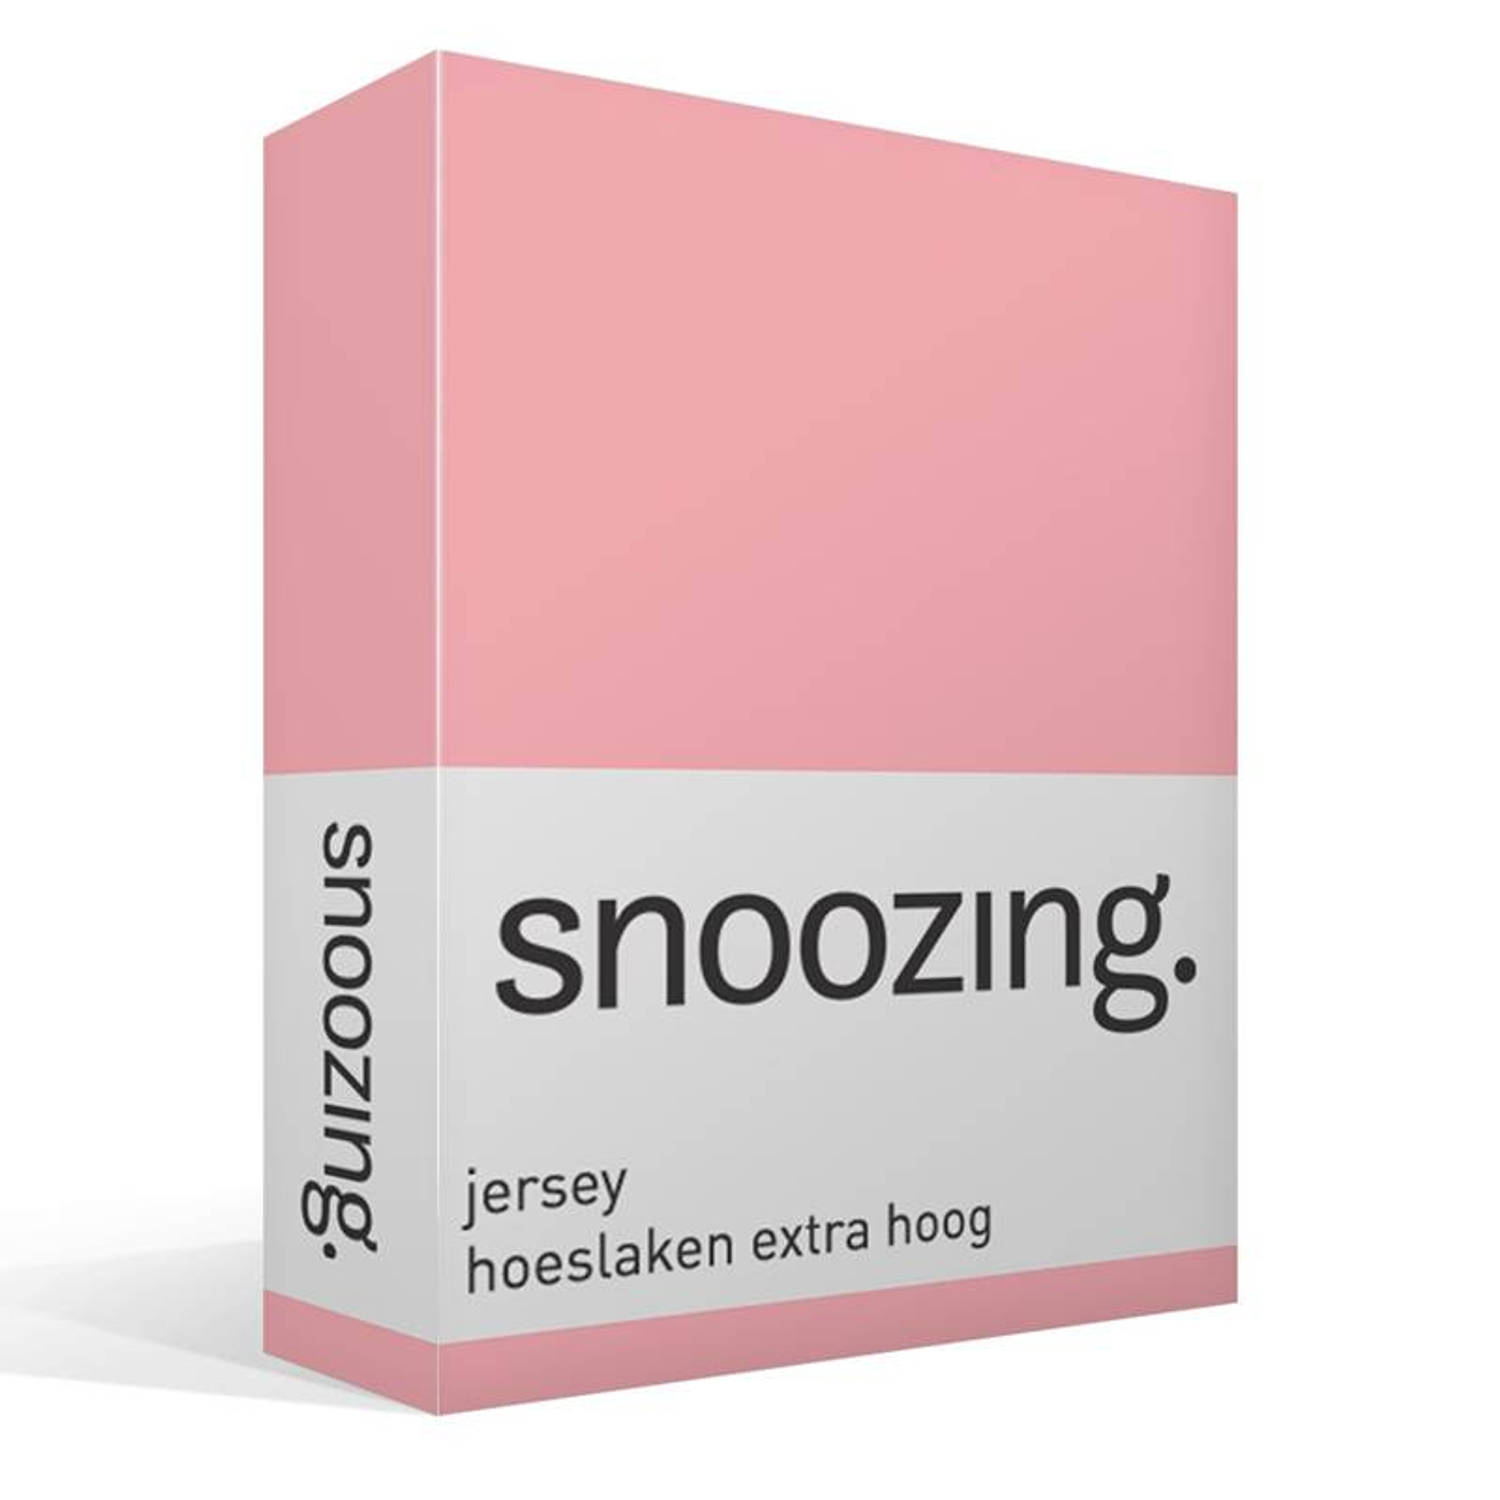 Snoozing jersey hoeslaken extra hoog - 100% gebreide katoen - 1-persoons (70x200 cm) - Roze